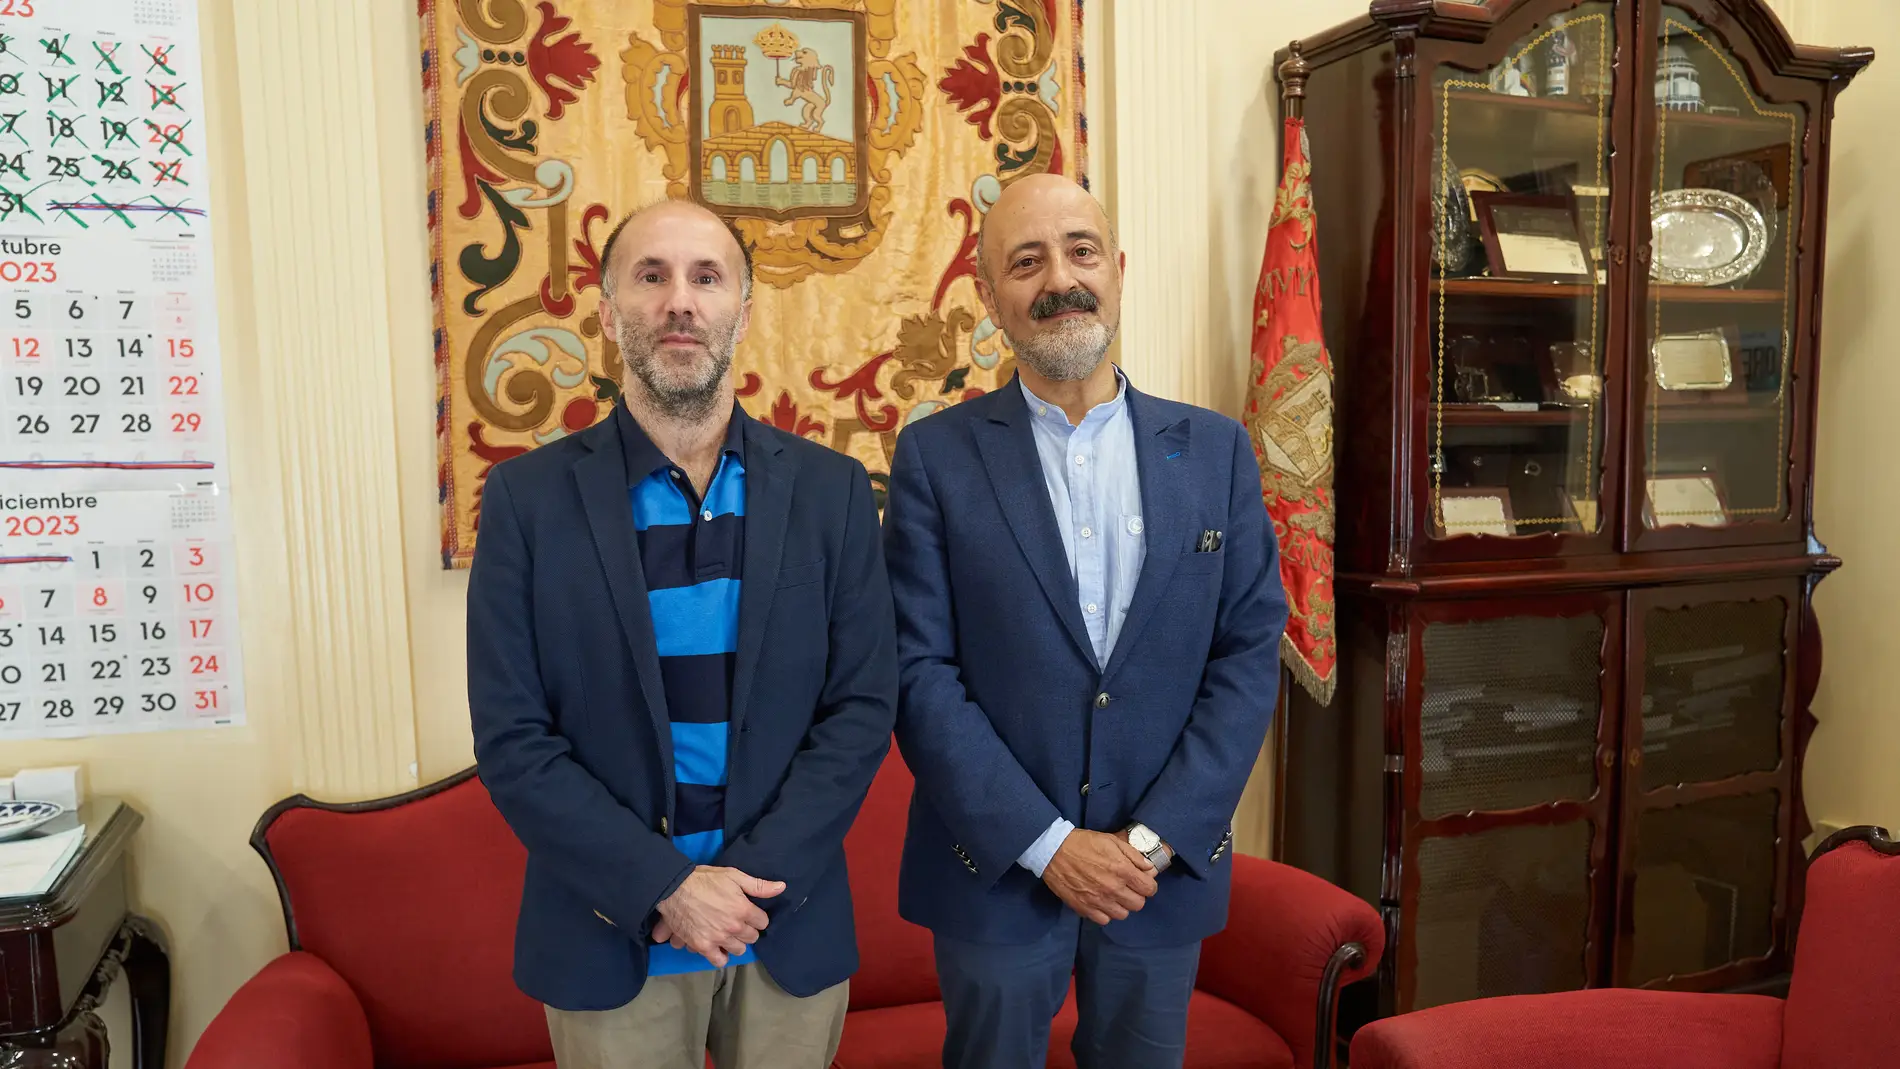 O Concello de Ourense e a Confederación Hidrográfica Miño-Sil avanzan na colaboración en diferentes proxectos